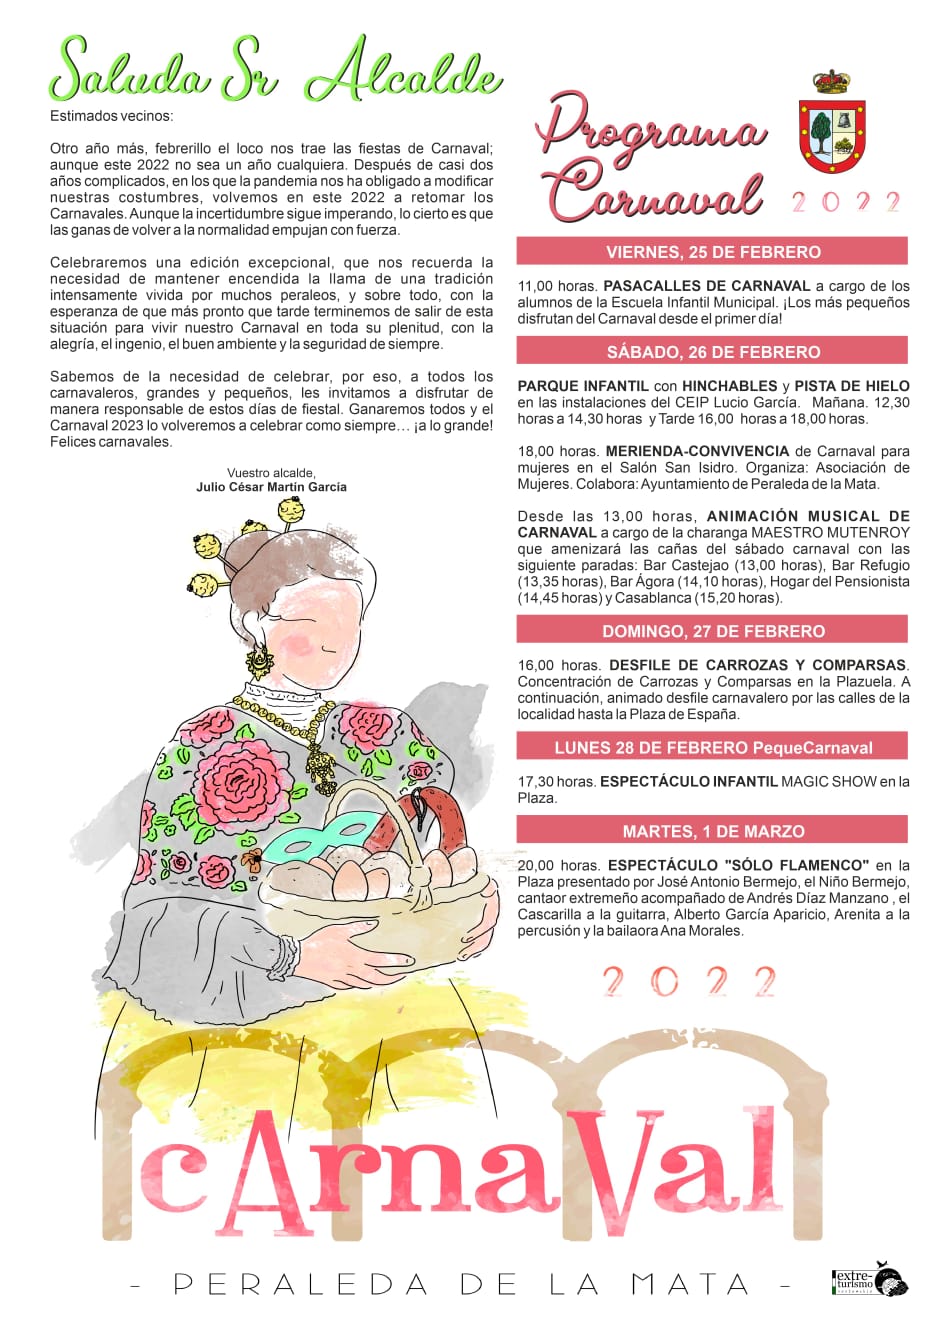 Carnaval (2022) - Peraleda de la Mata (Cáceres) 2